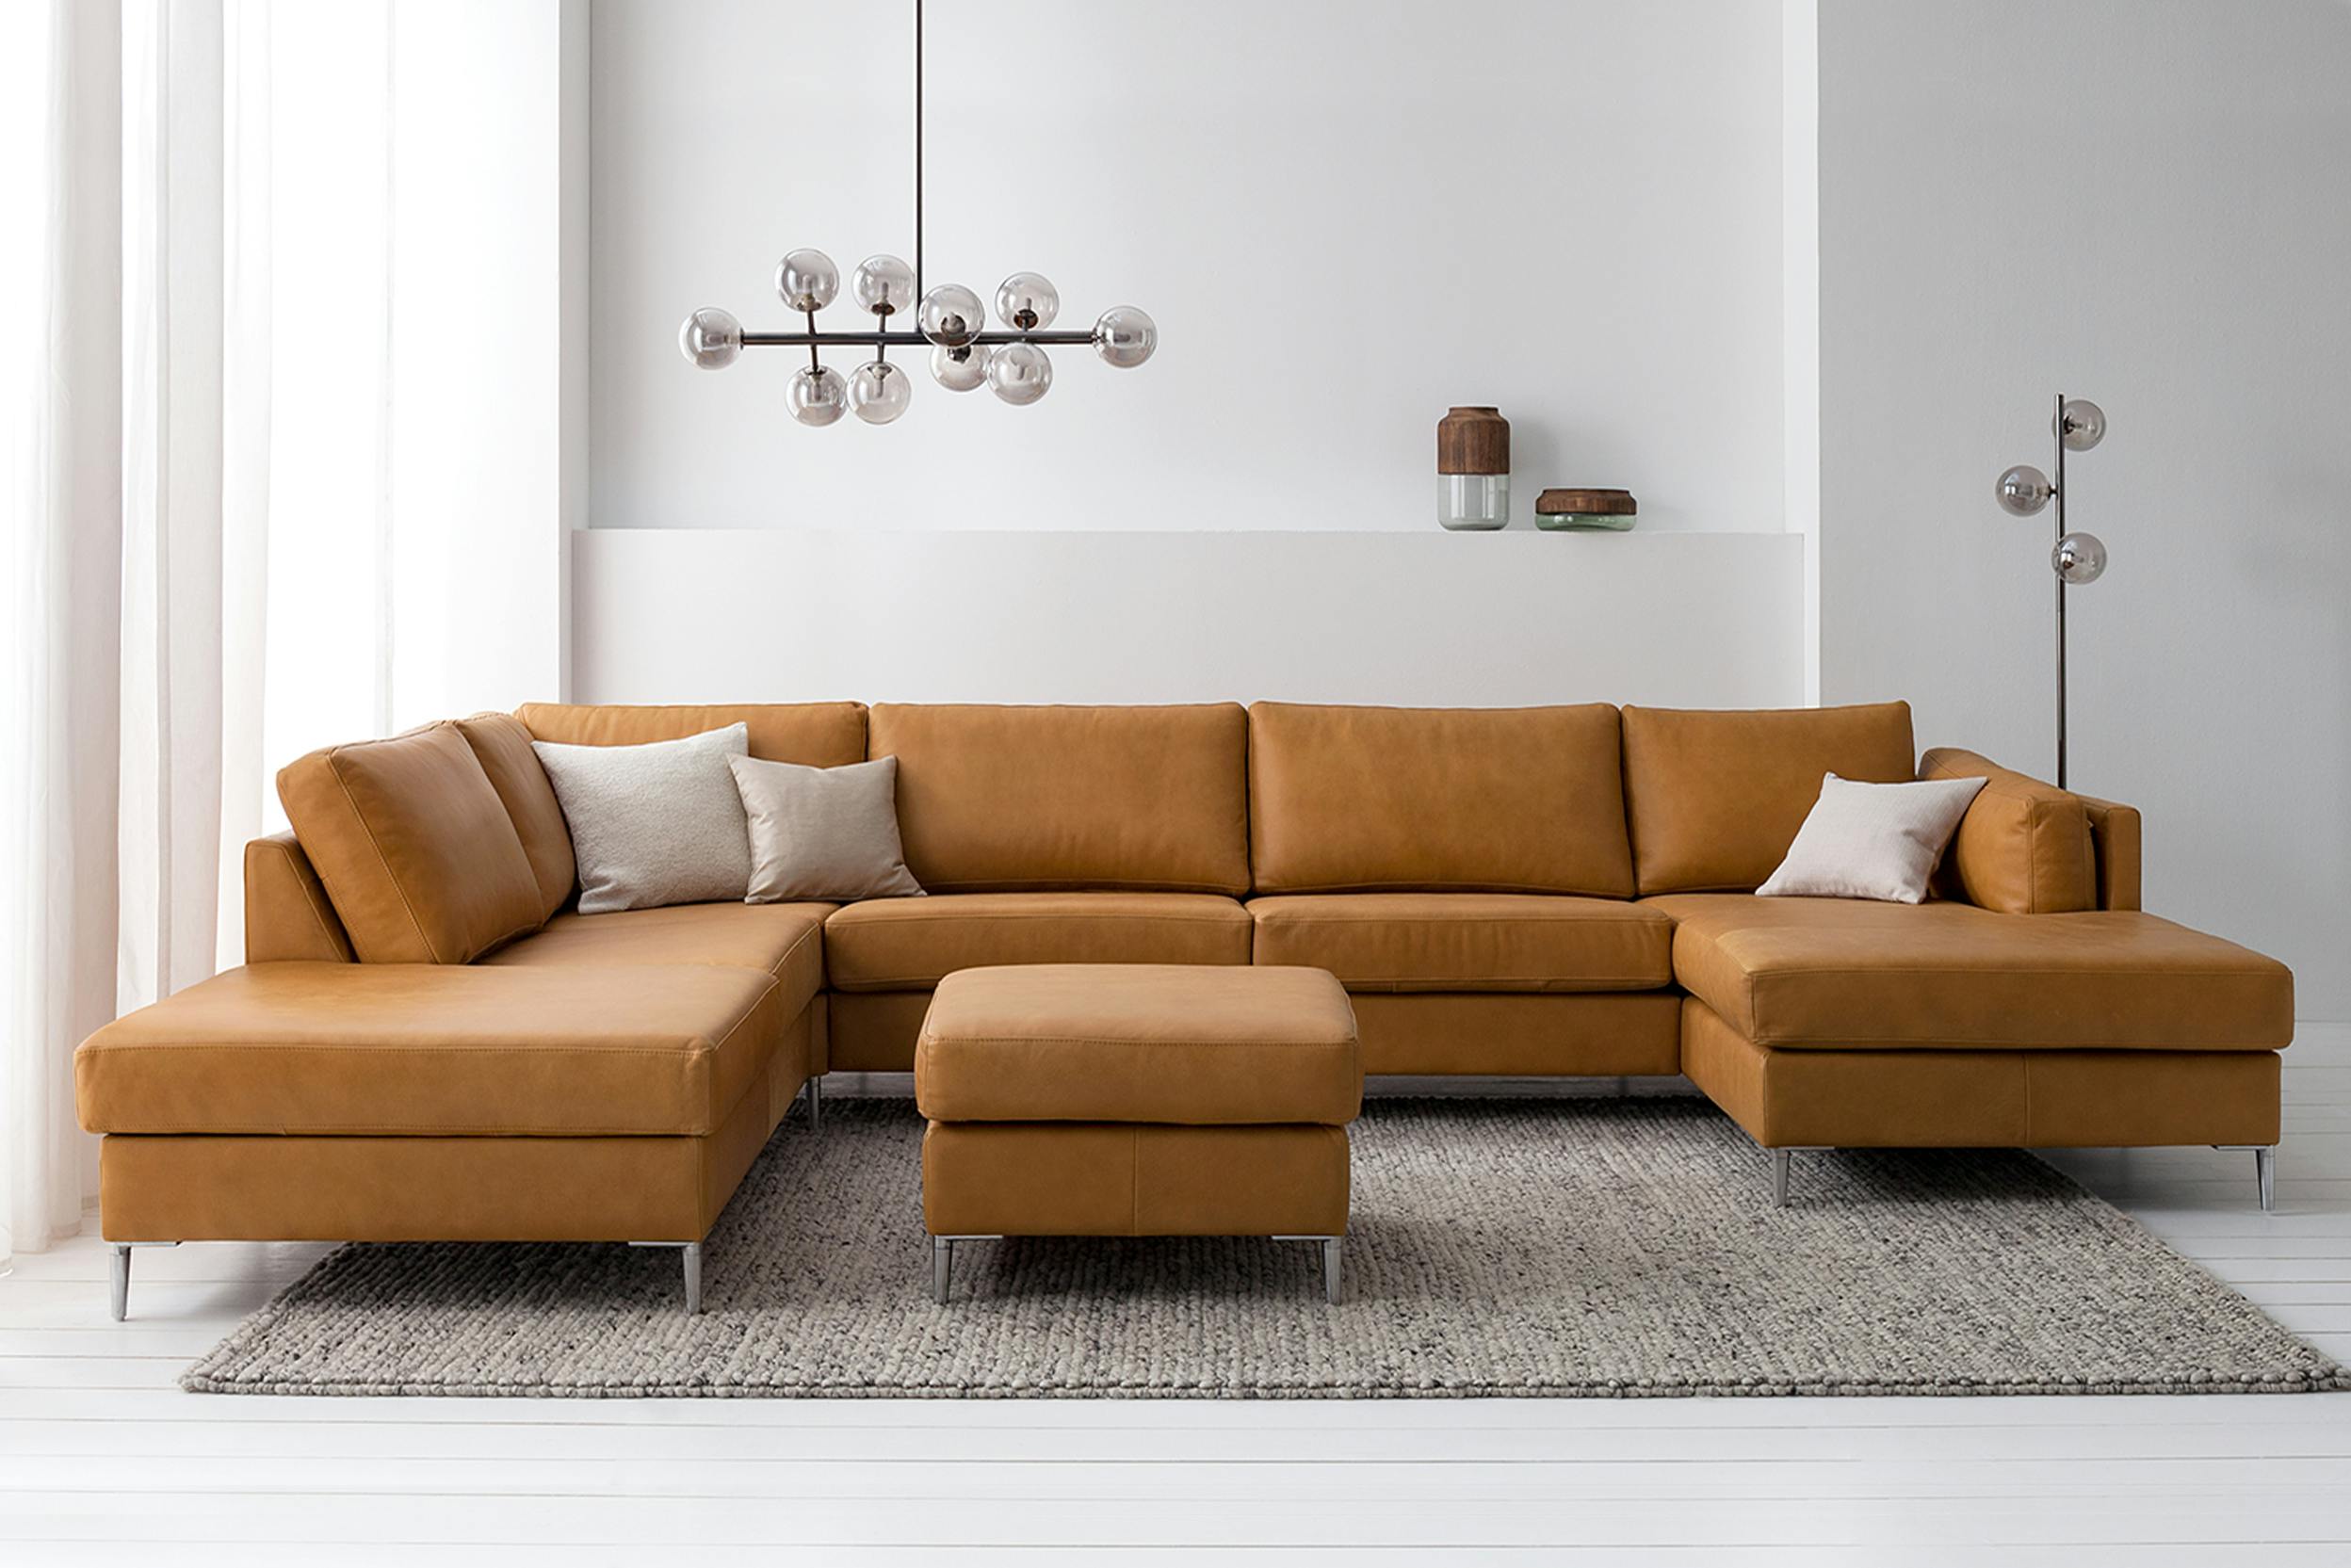 Welches Material ist besser fürs Sofa?